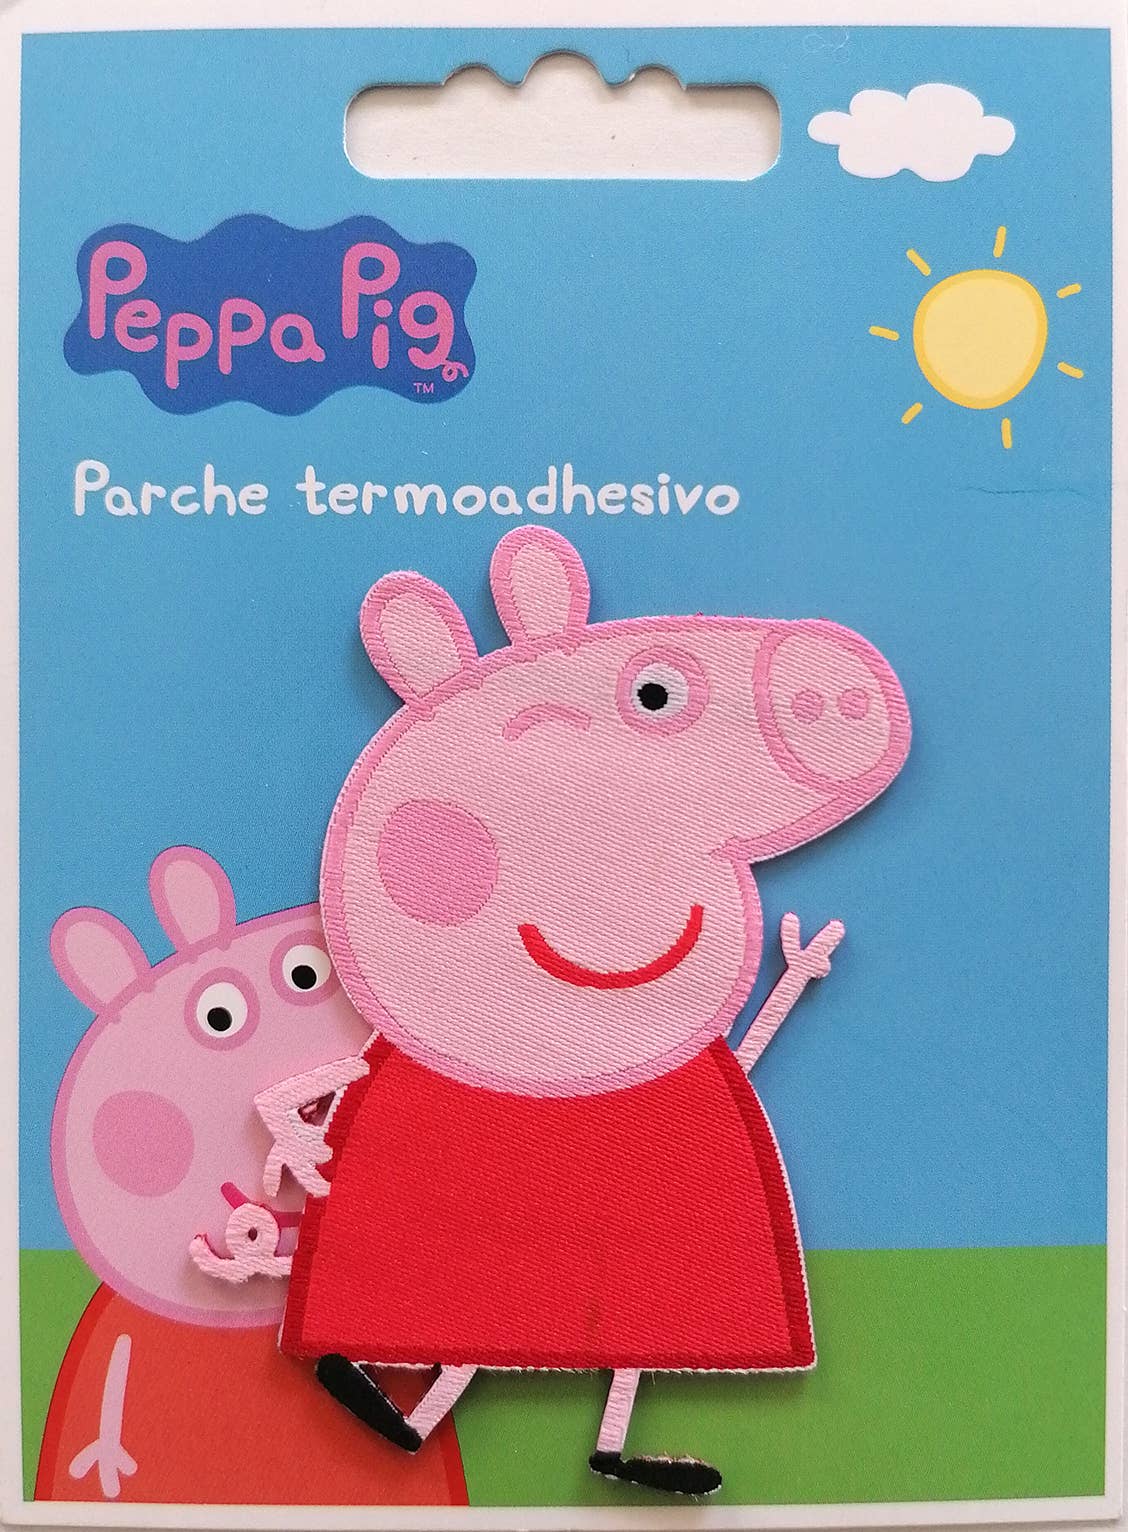 Parche termoadhesivo - Peppa Pig Peppa al por mayor para tu tienda - Faire  España